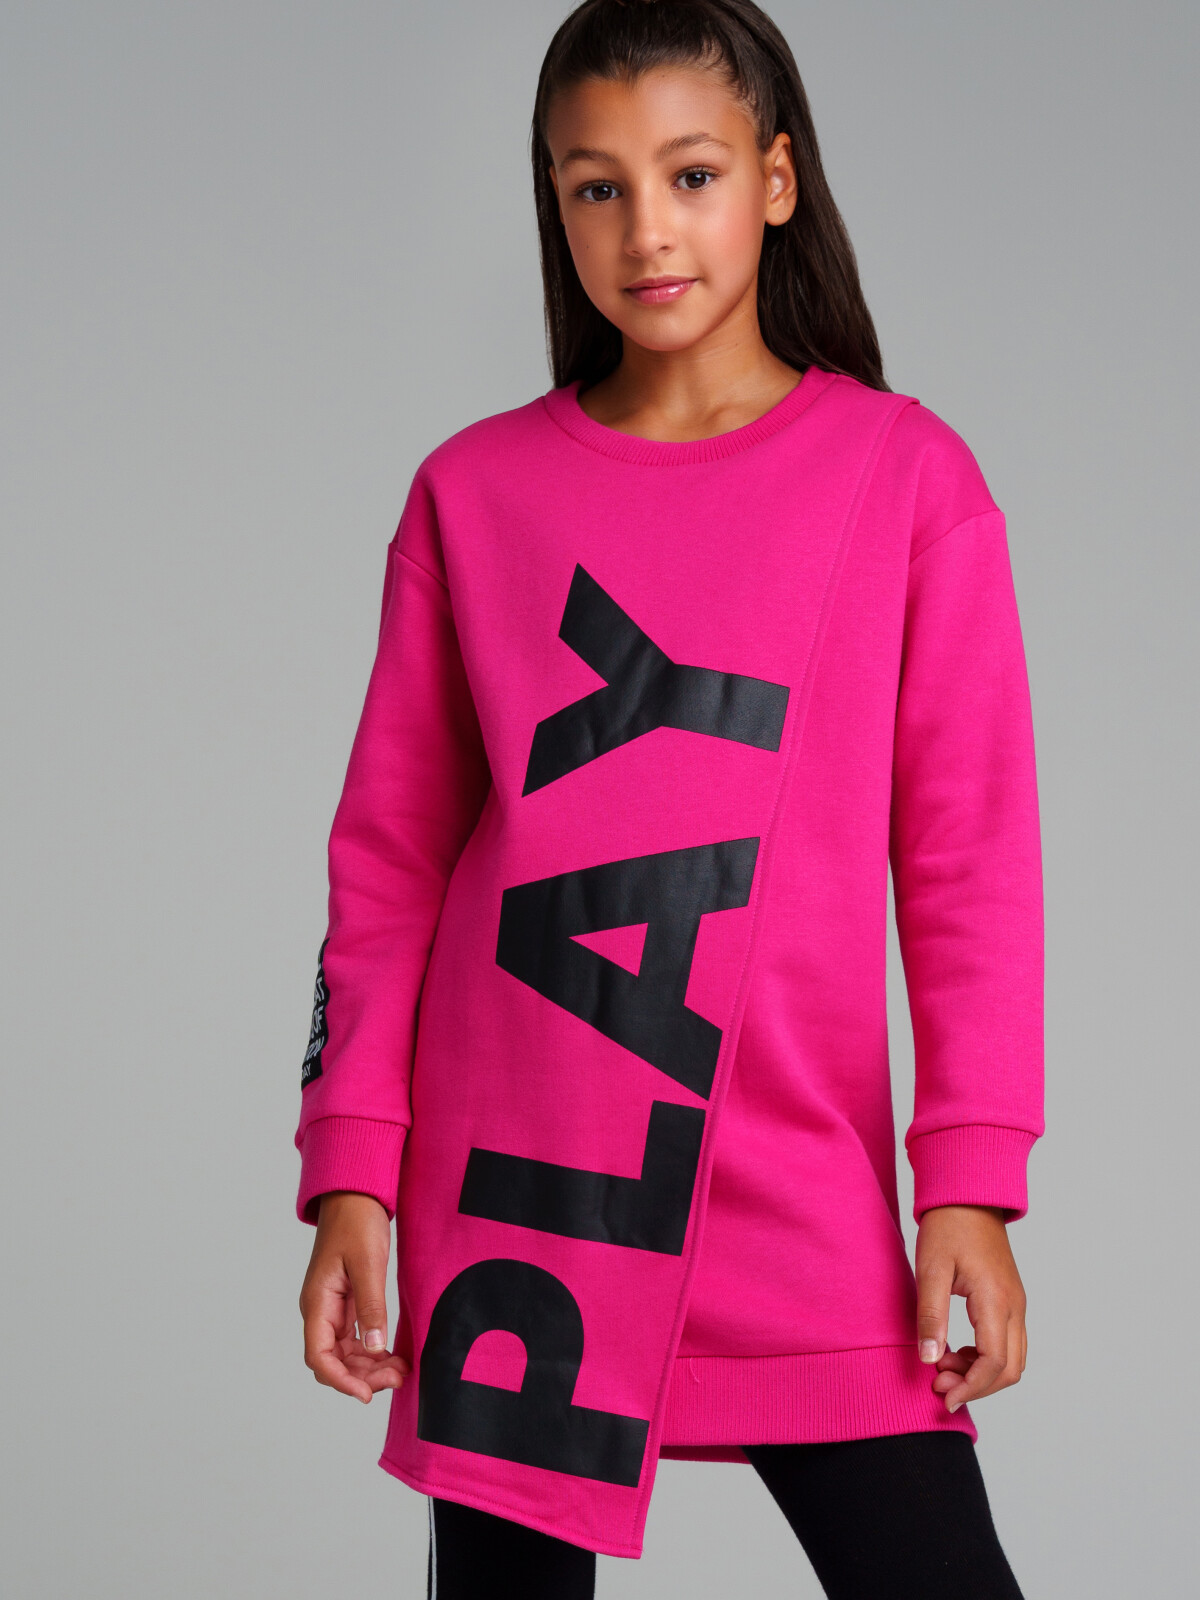 Платье трикотажное для девочек PlayToday, фуксия,черный, 134